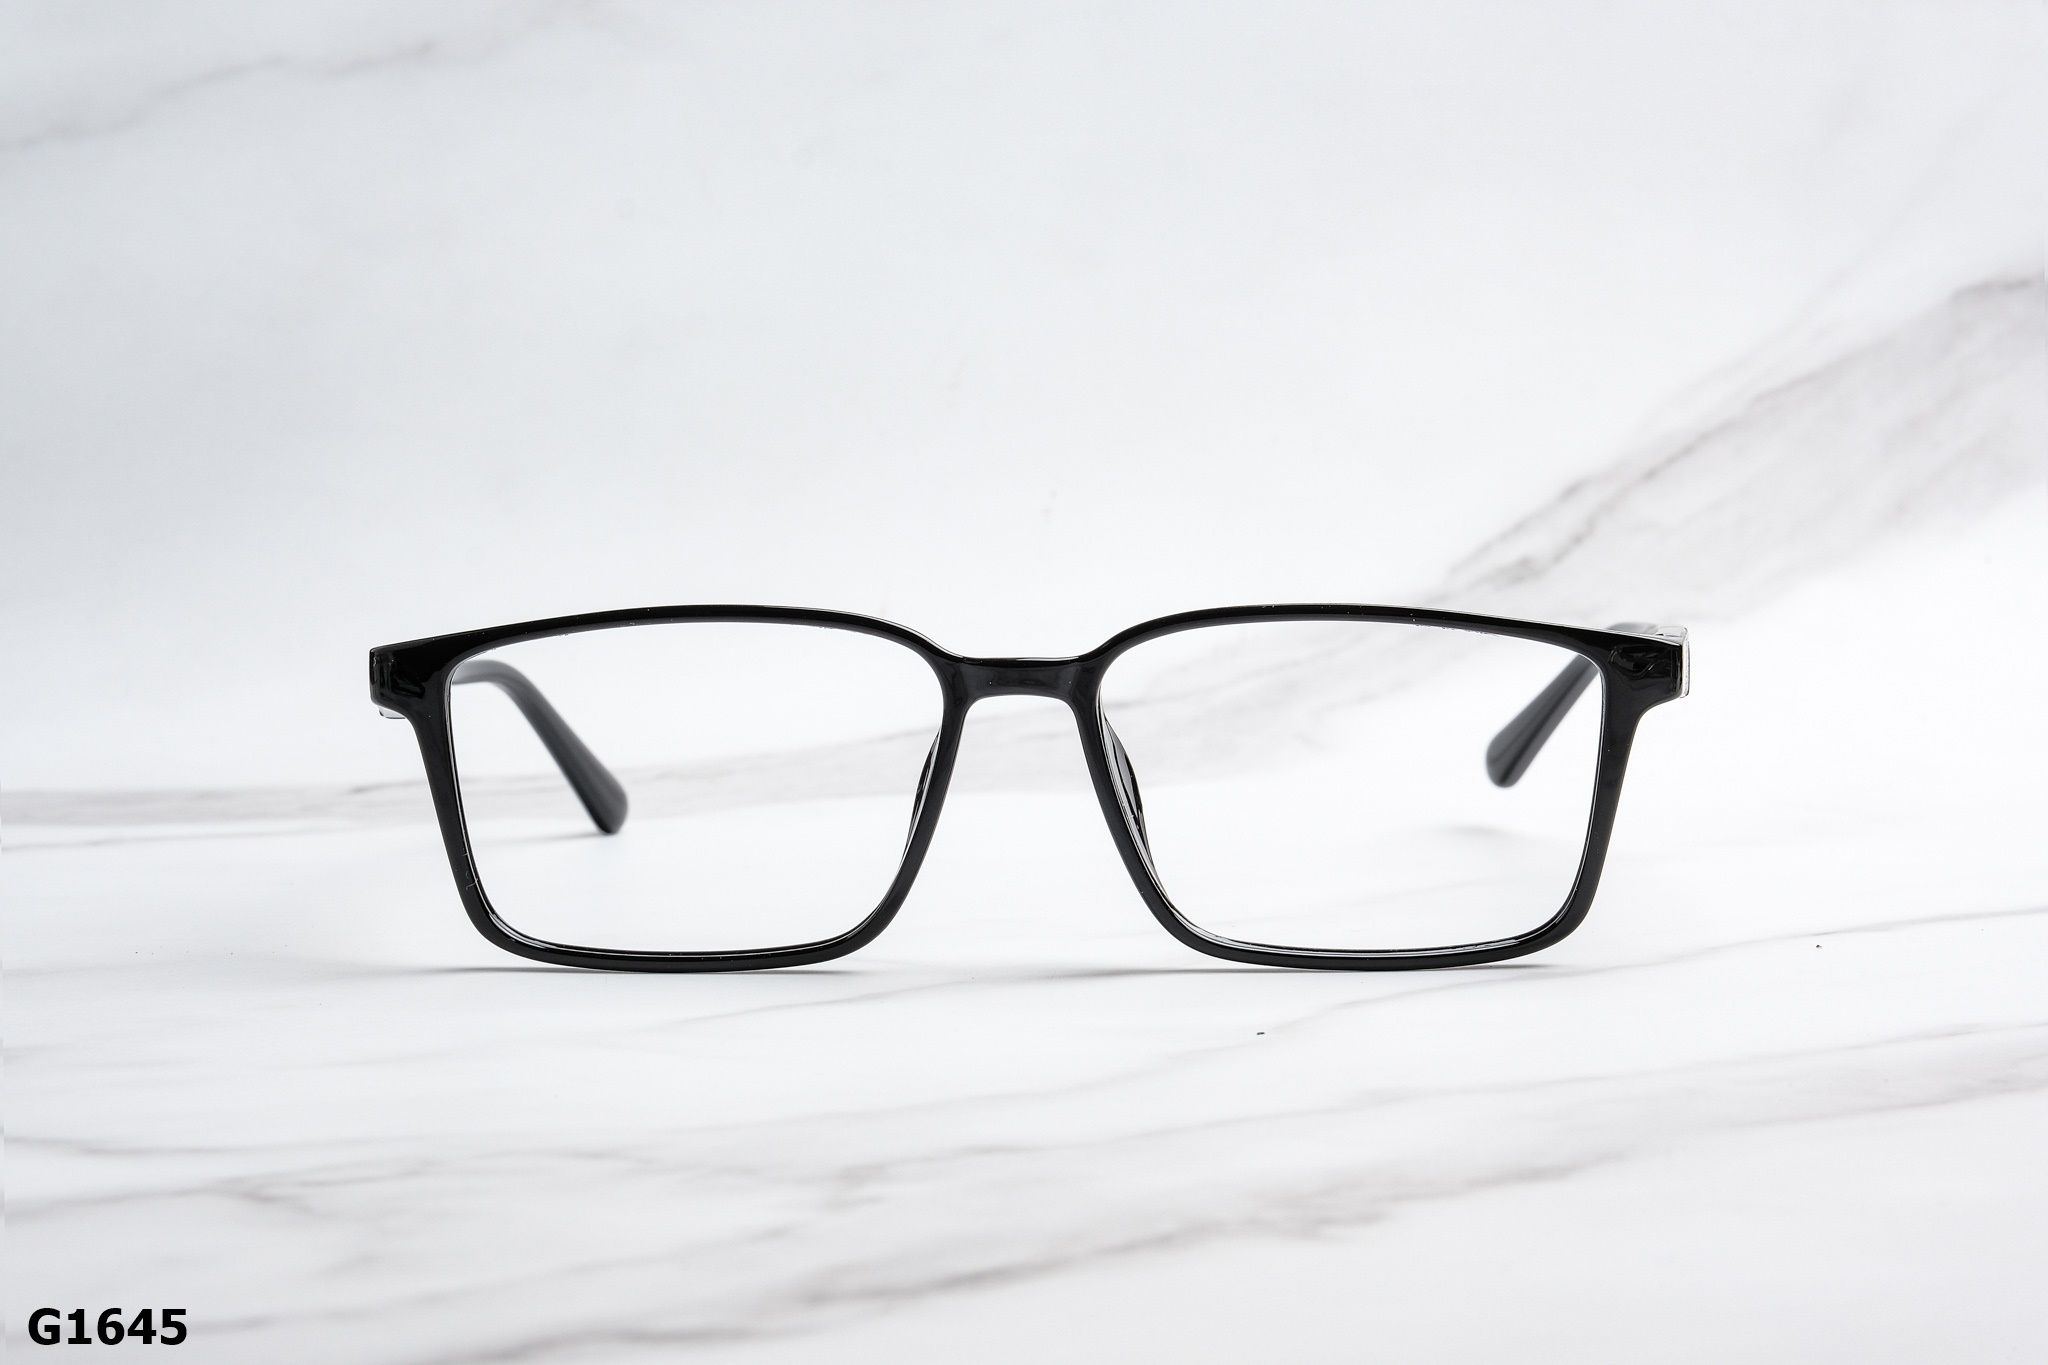  Rex-ton Eyewear - Glasses - G1645 